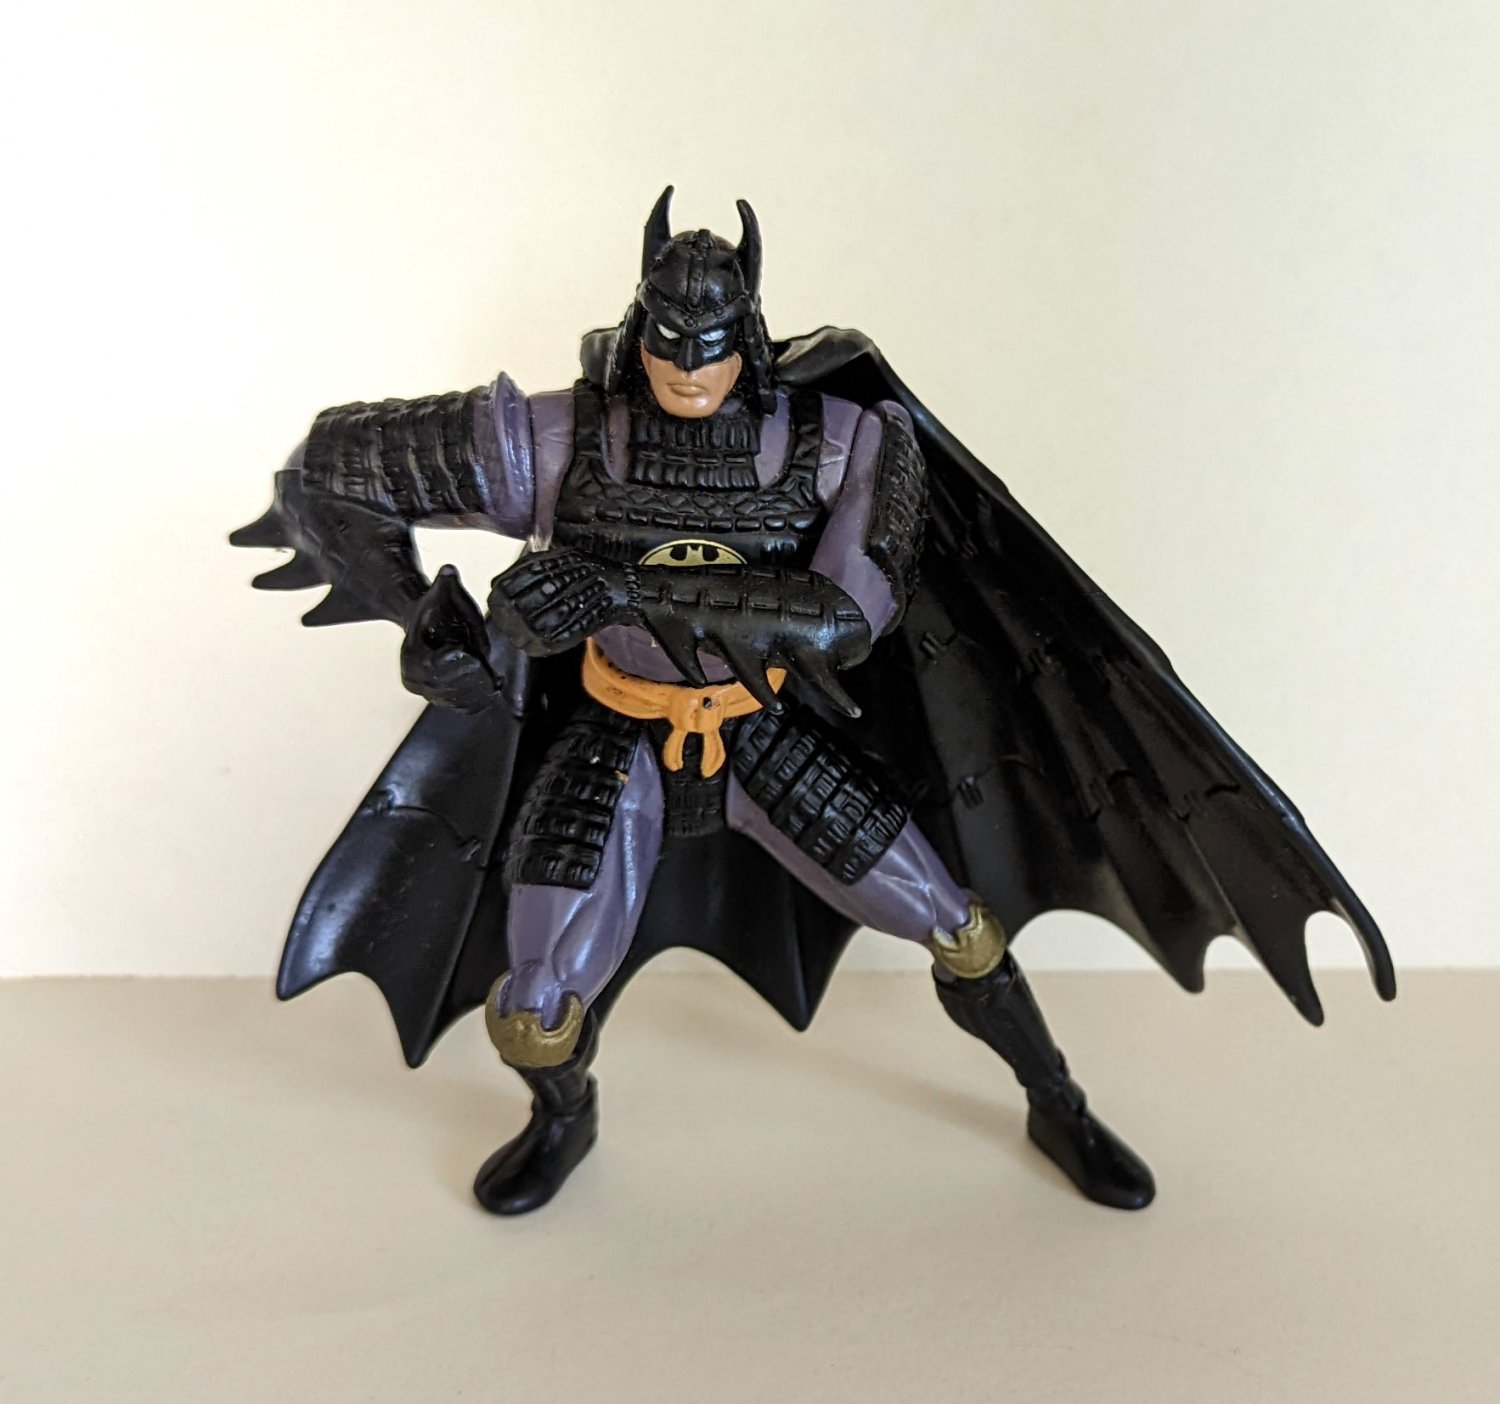 Samurai Batman Figure Legends of Batman Kenner